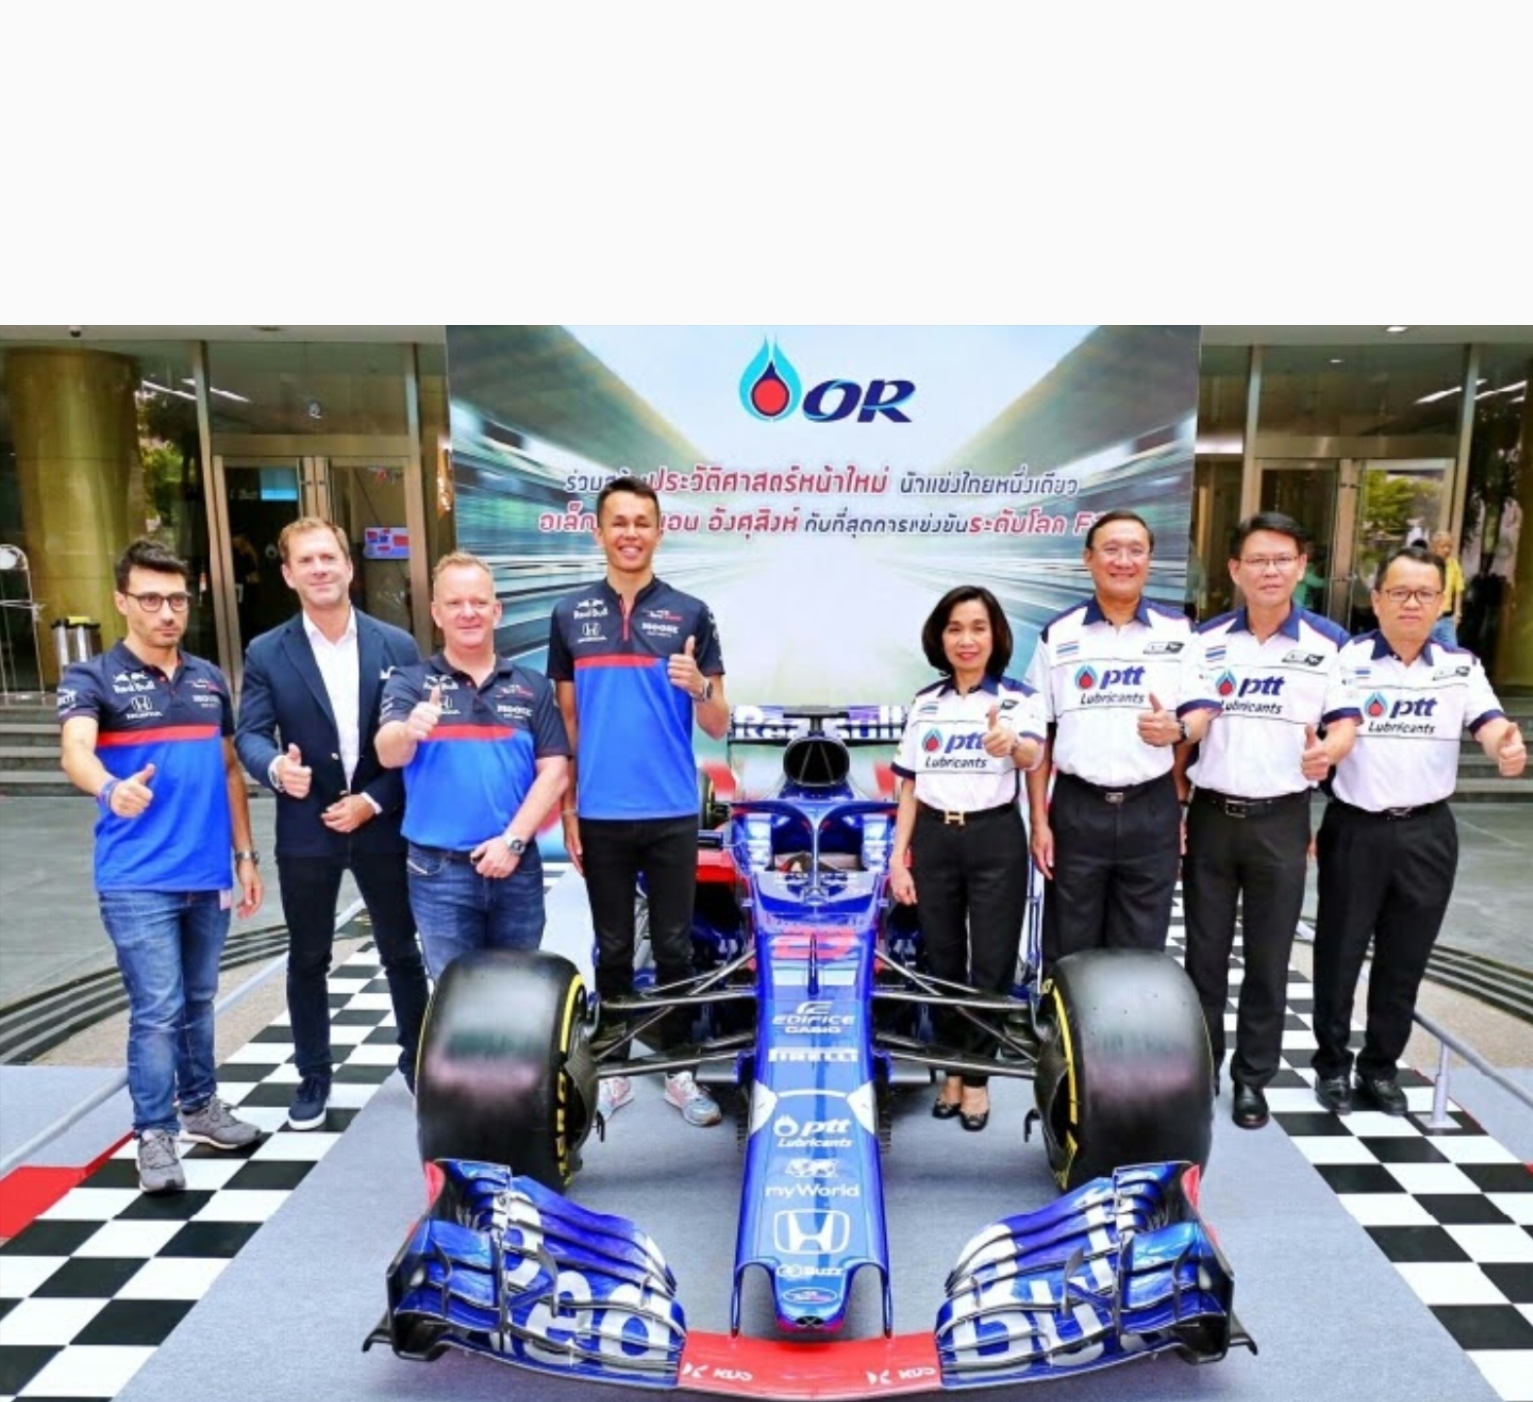 OR ร่วมสร้างประวัติศาสตร์หน้าใหม่ สนับสนุน อเล็กซ์ อัลบอน นักแข่งไทยหนึ่งเดียว กับที่สุดการแข่งขันระดับโลก F1